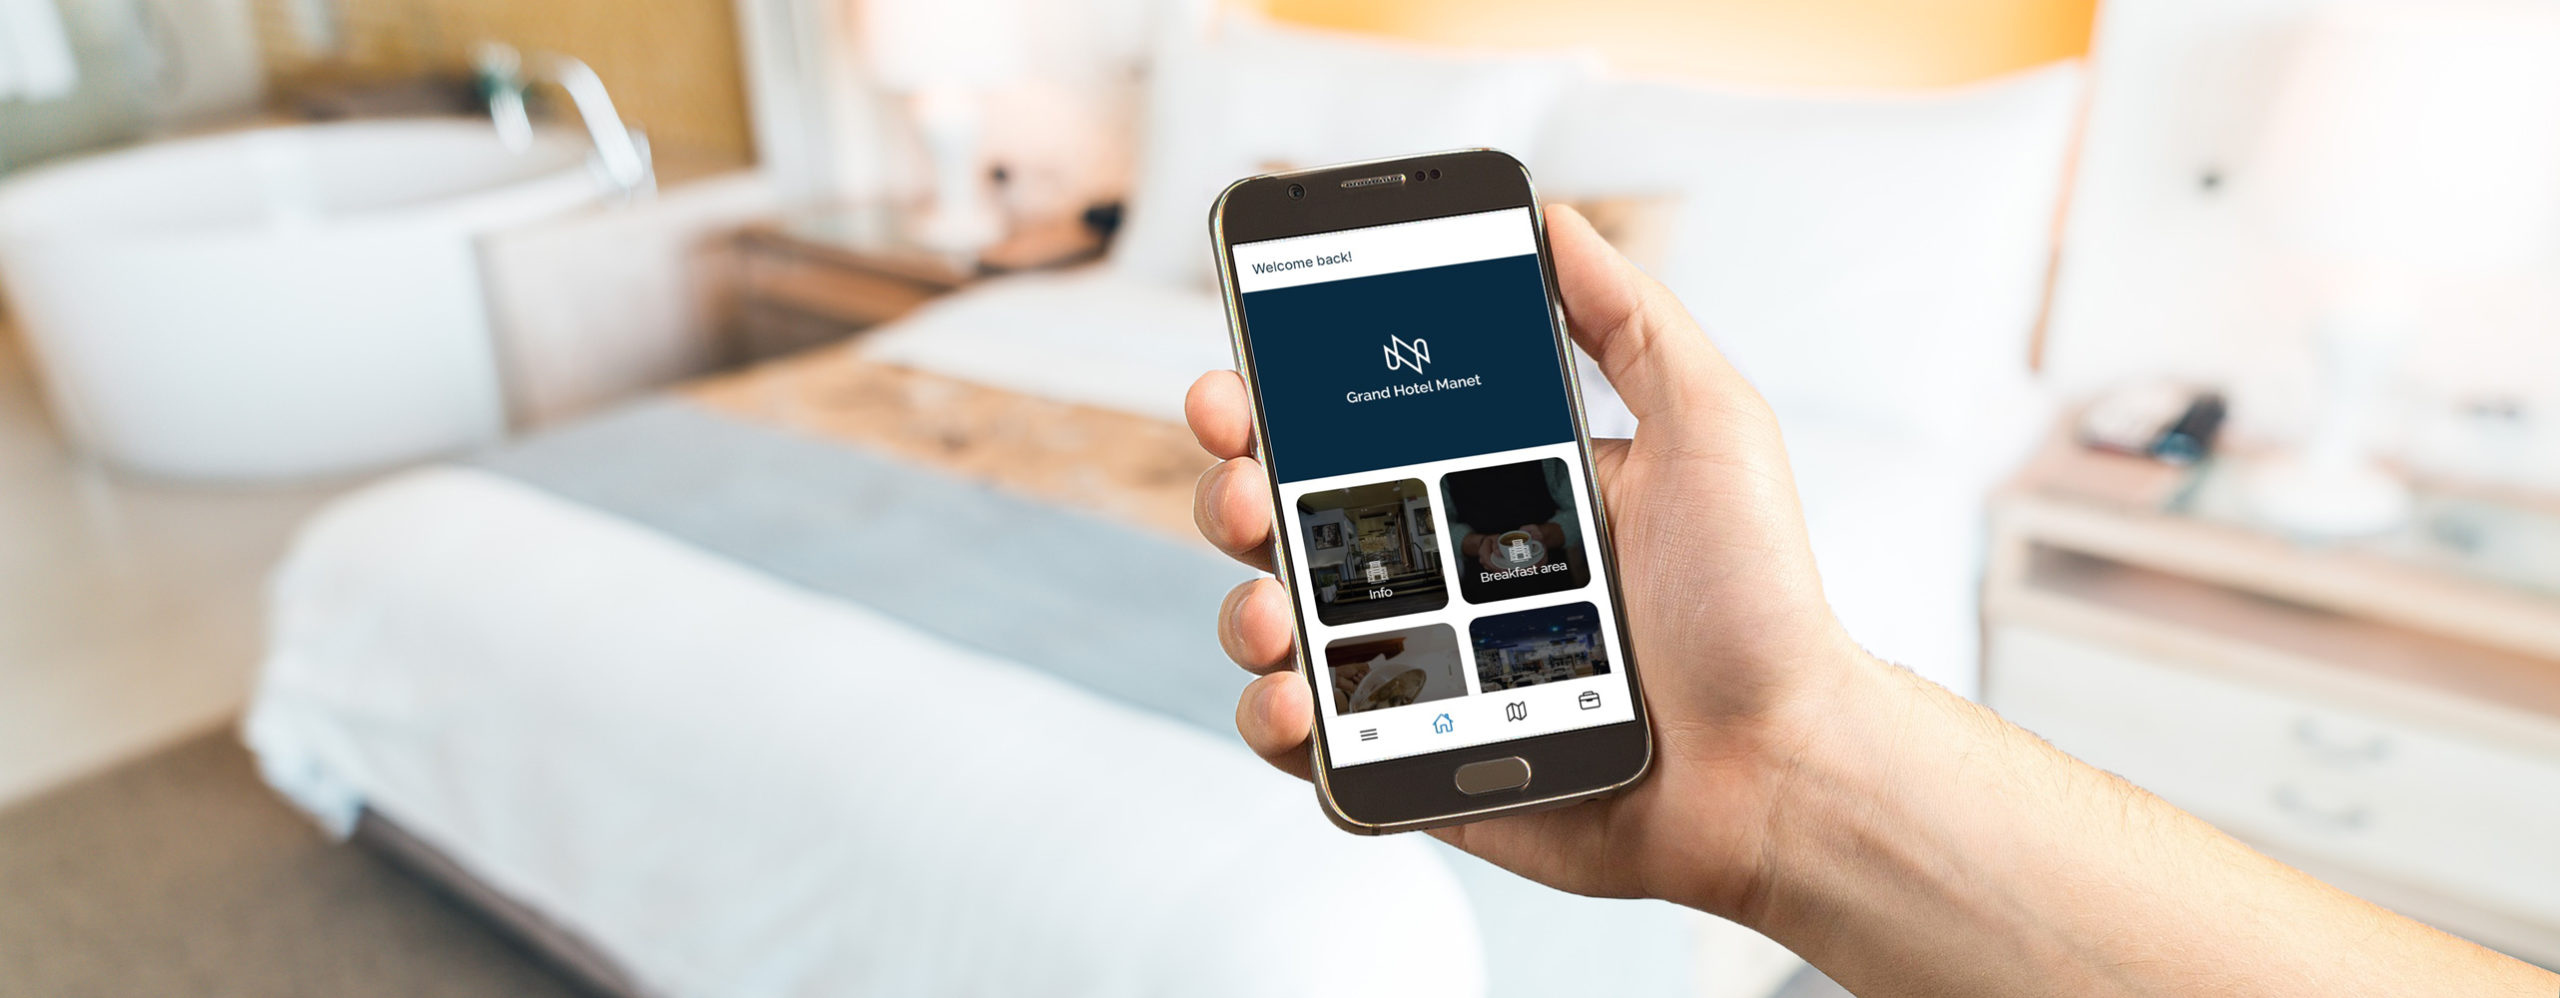 Manet app for hotels